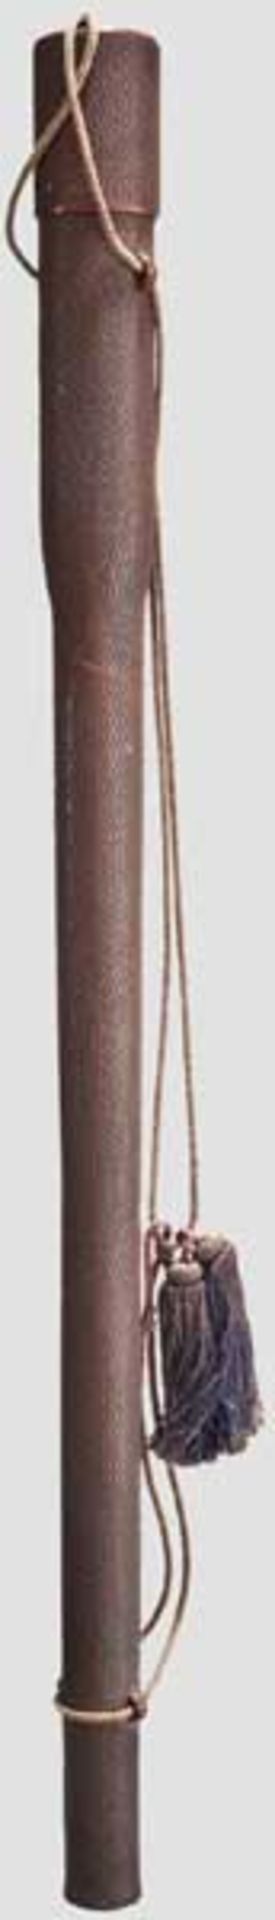 Pfeilköcher, Japan, Meiji-/Taisho-Periode   Tubus und Stülpdeckel aus geprägtem Pappmaché, rot